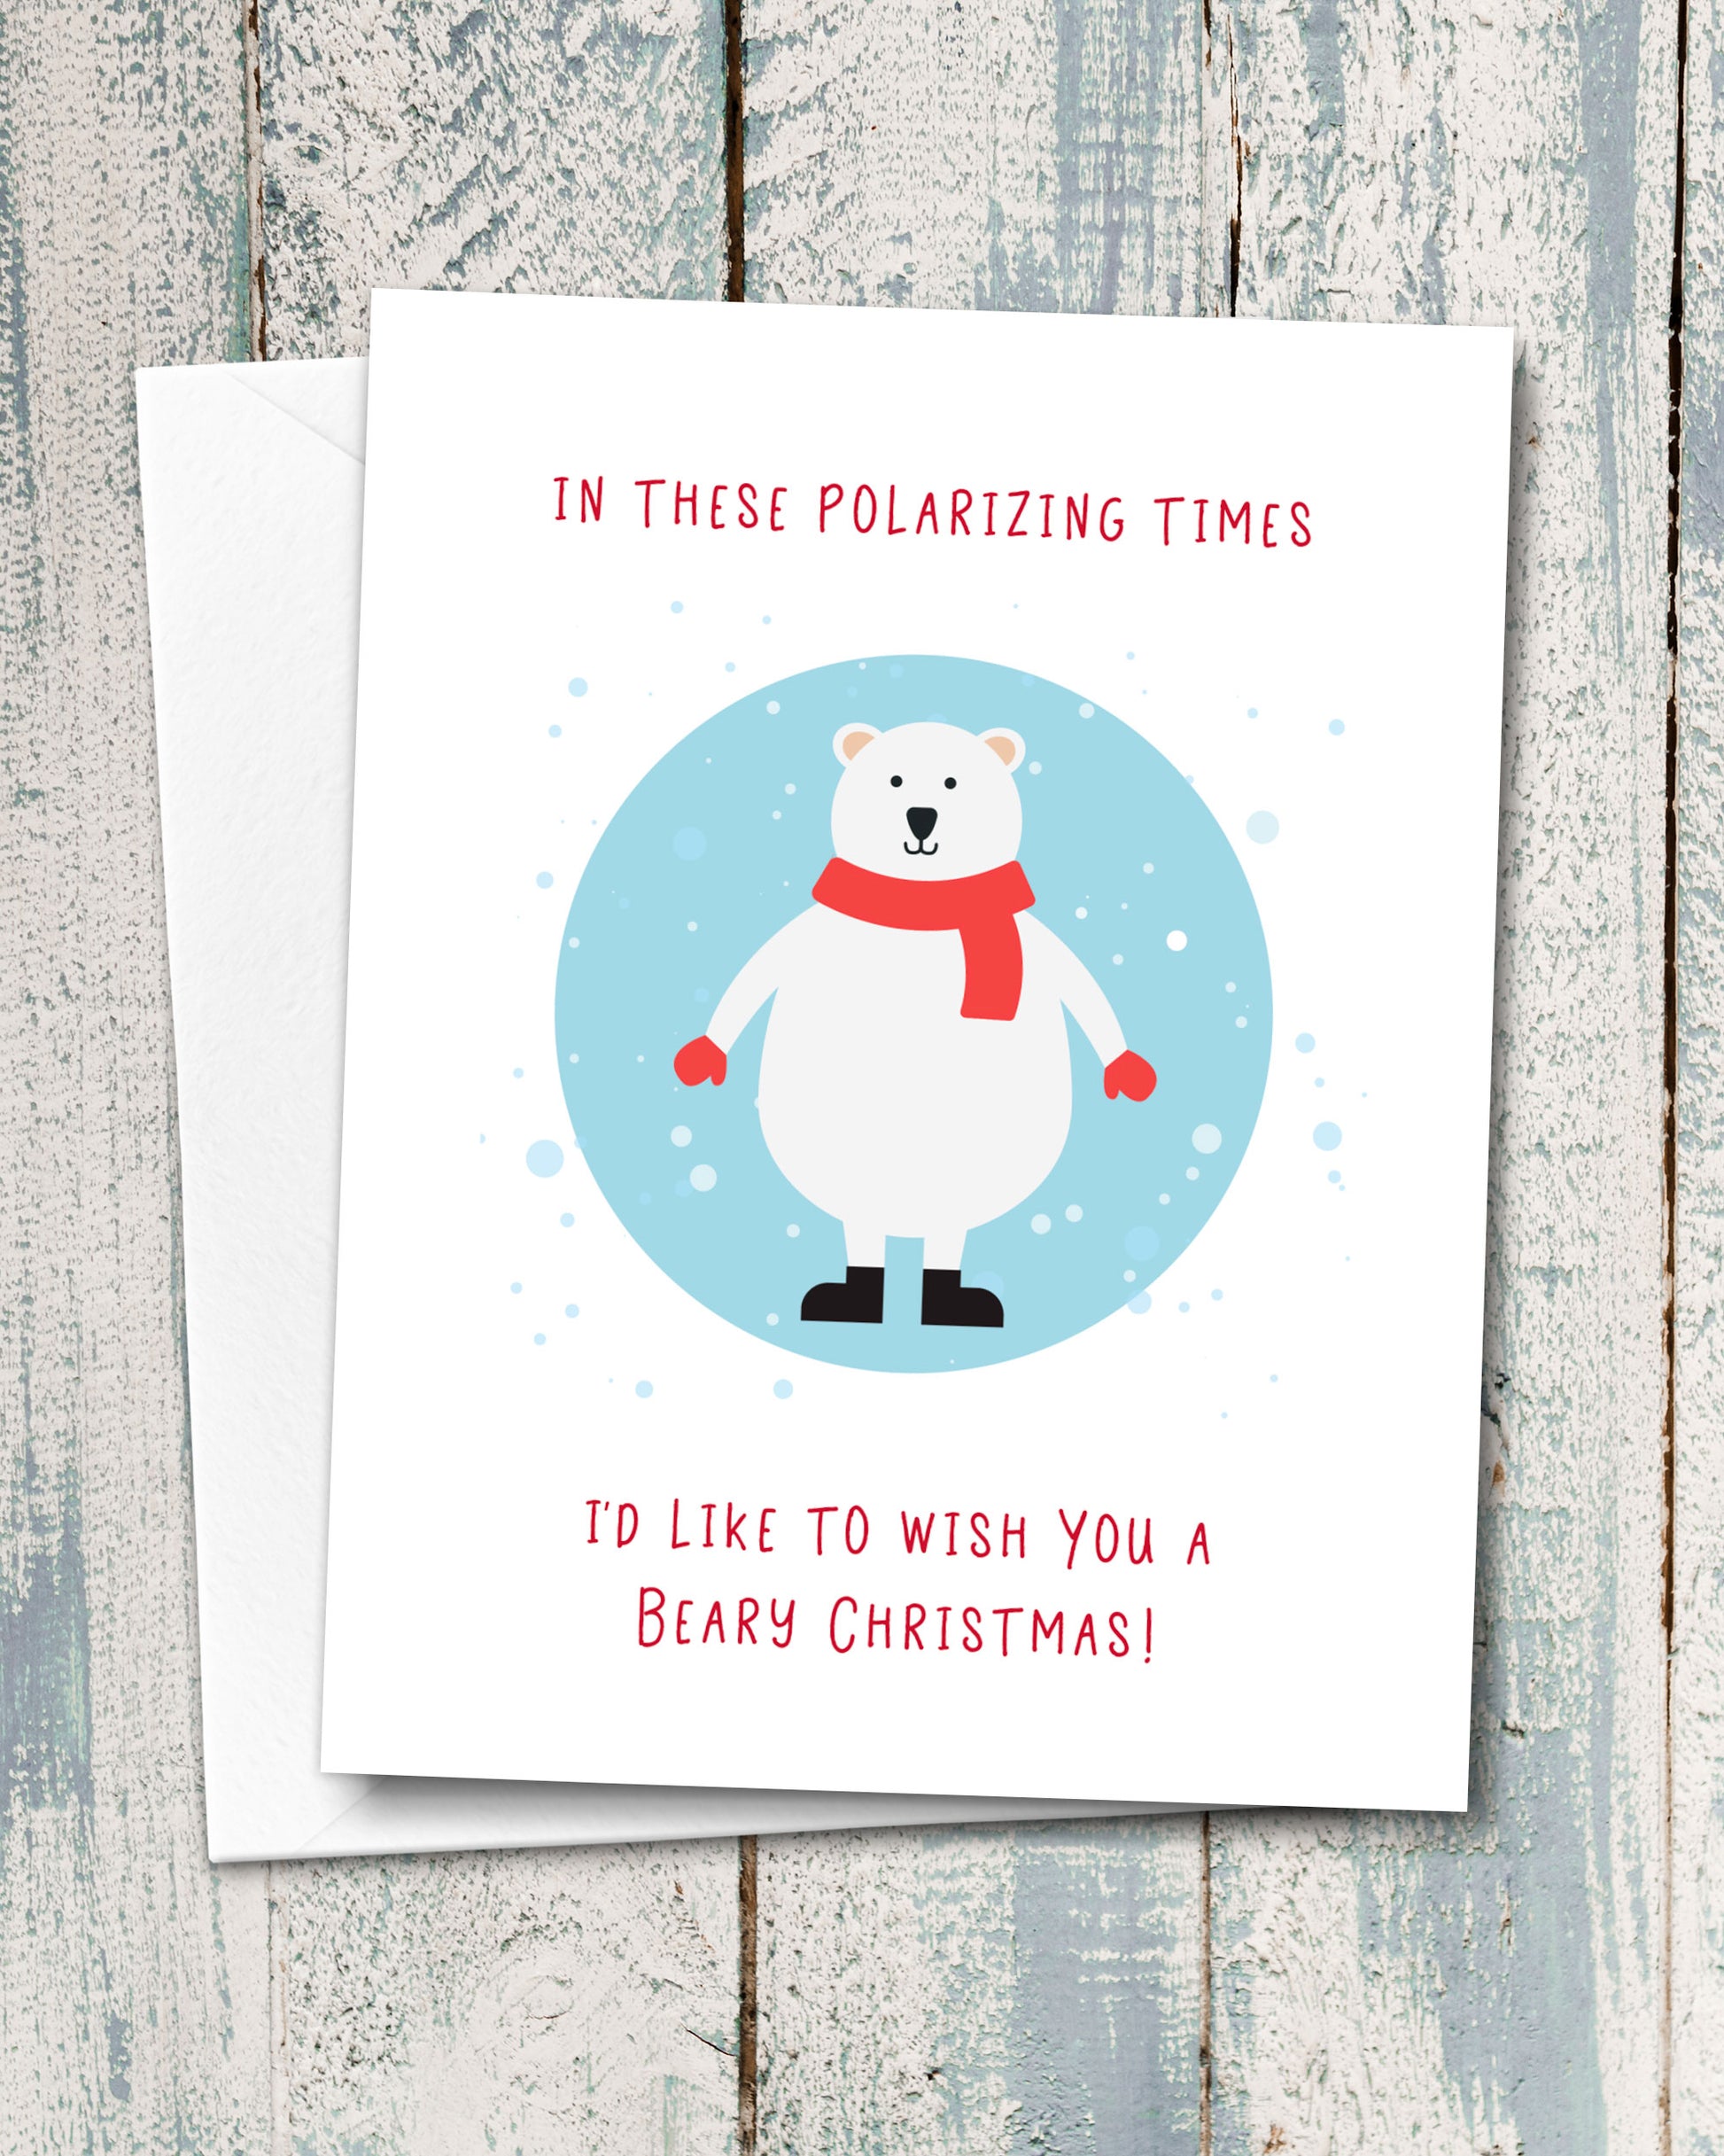 Beary Christmas Polar Bear Card for Polarizing Times, by Smirkantile